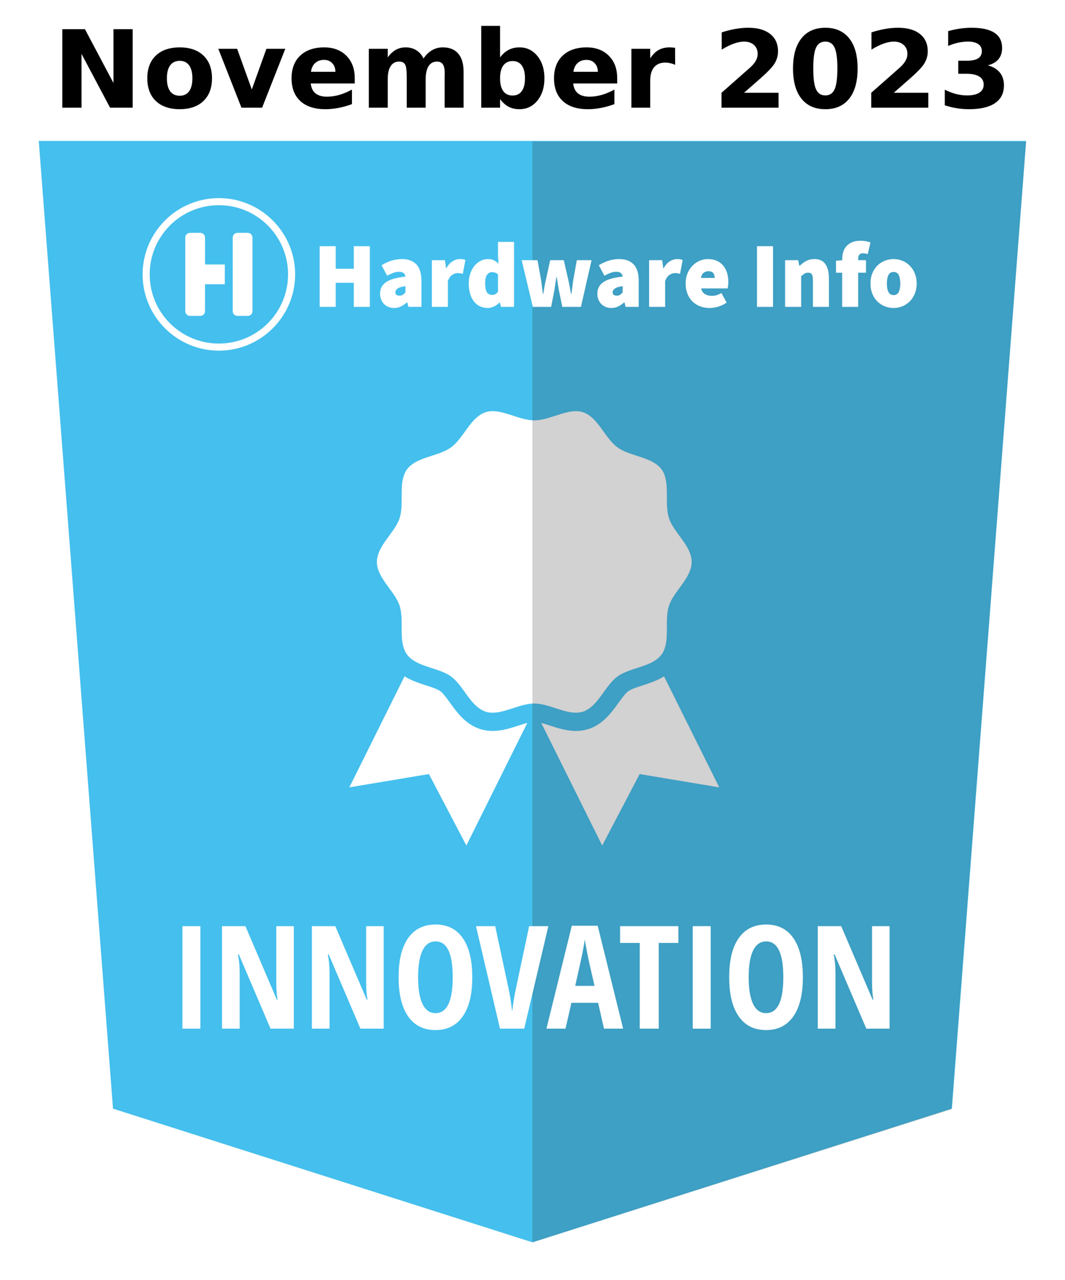 Lauréat du prix de l'innovation Hardware Info Novembre 2023